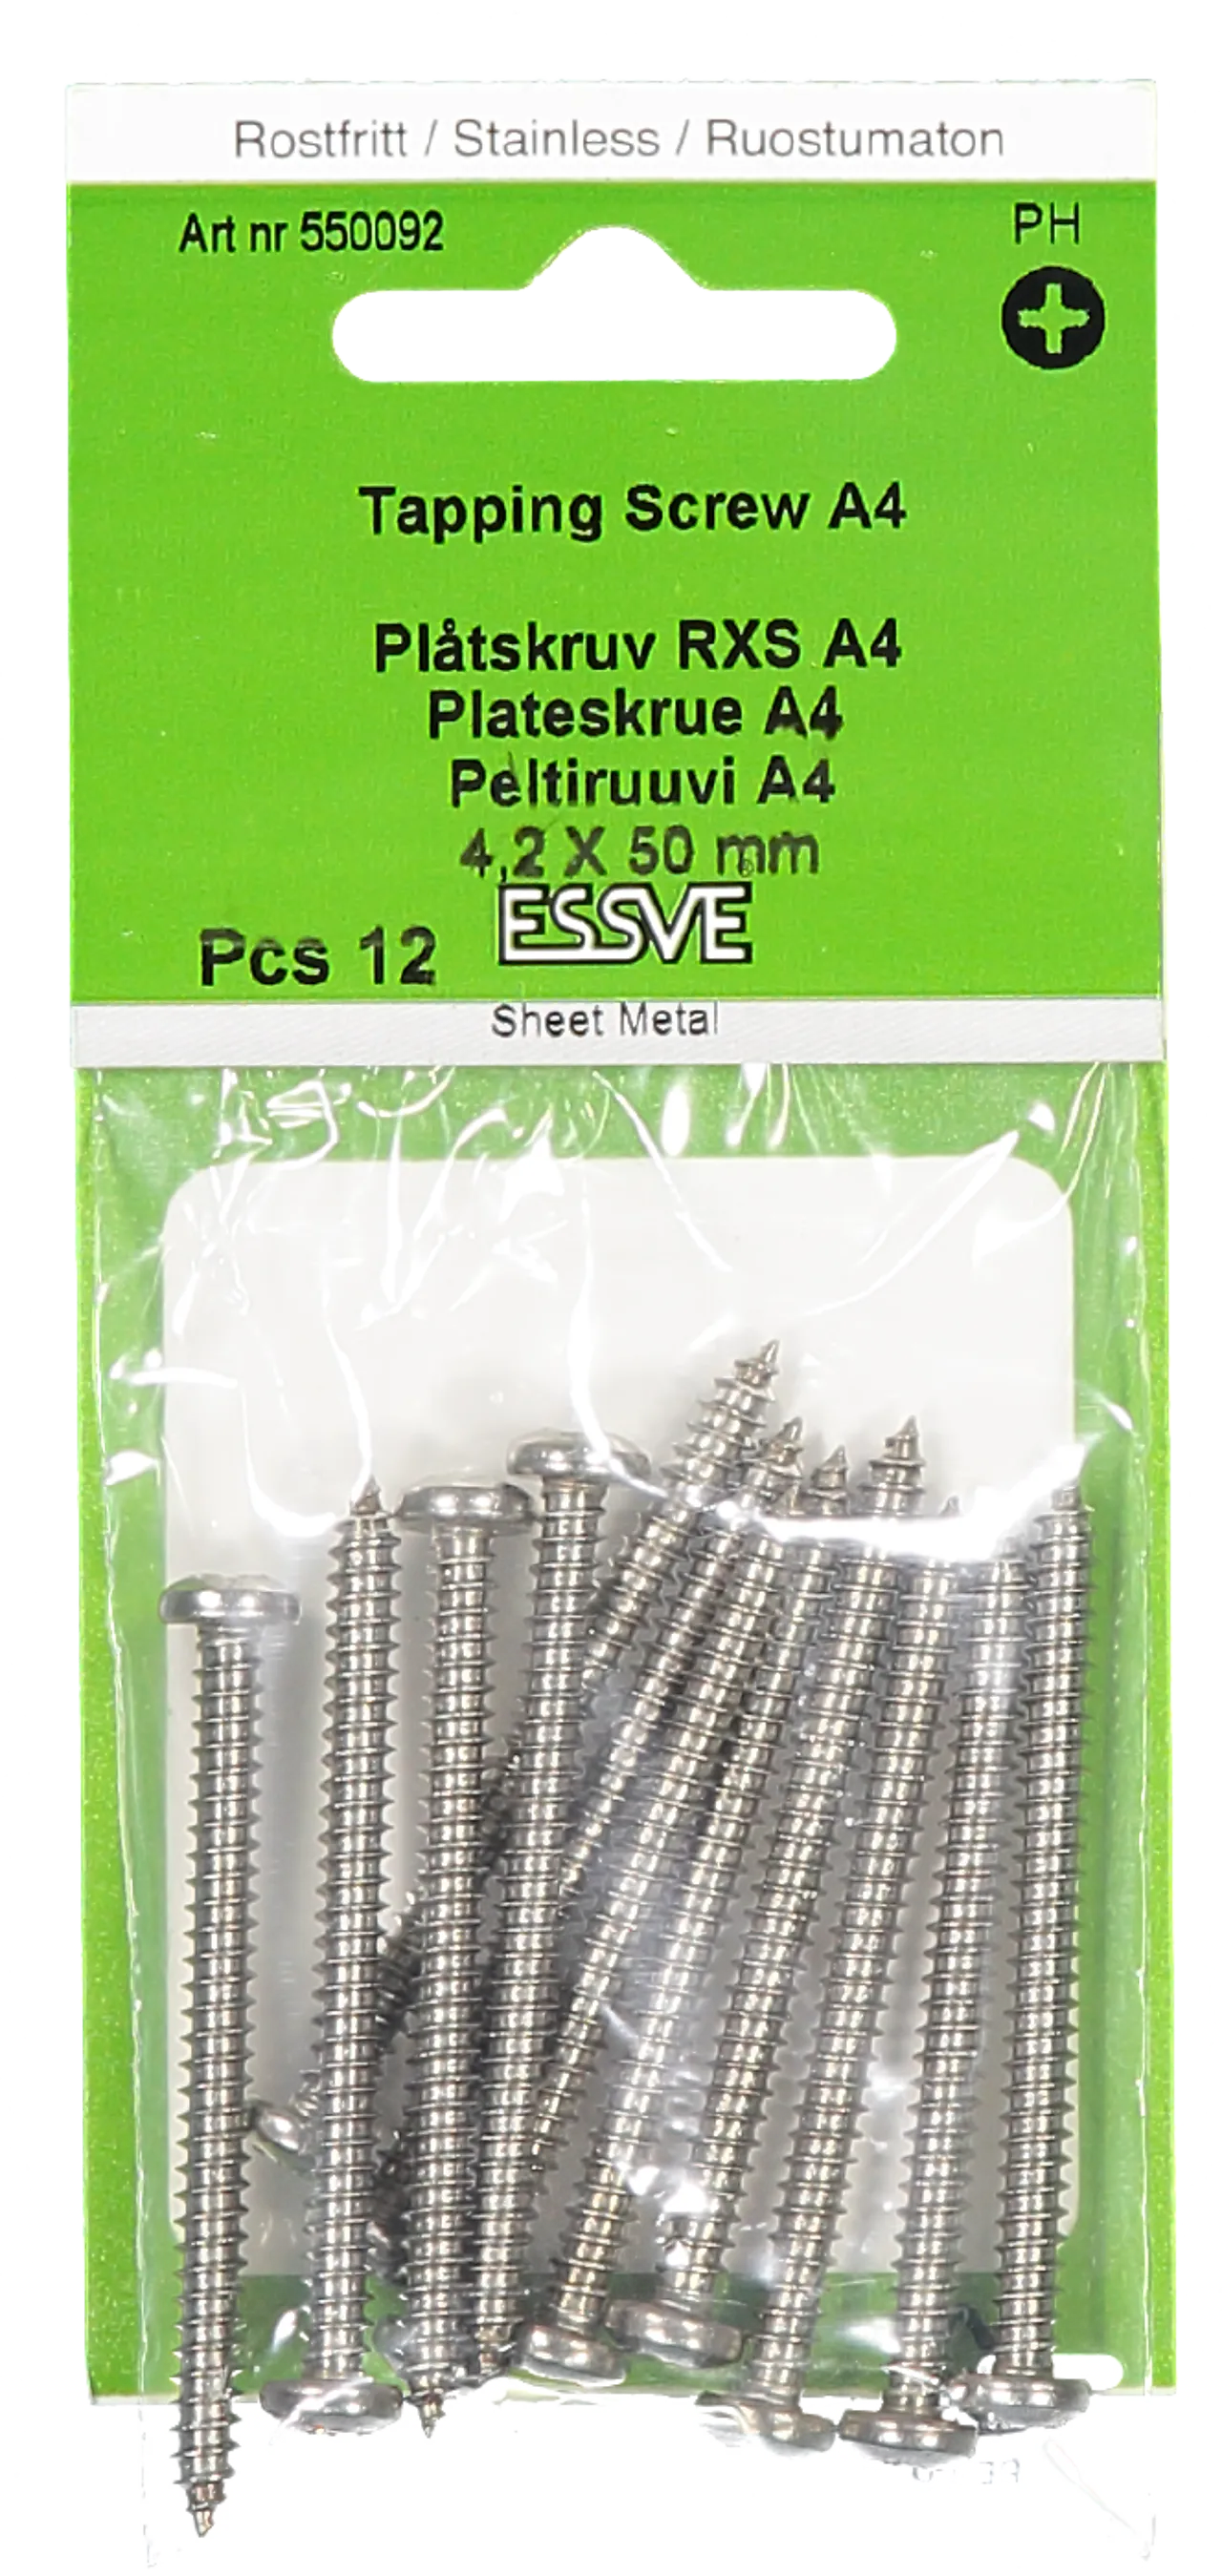 Plateskrue ph 4,2x50 a4 a-12syrefast panhode pz2 tre/stål